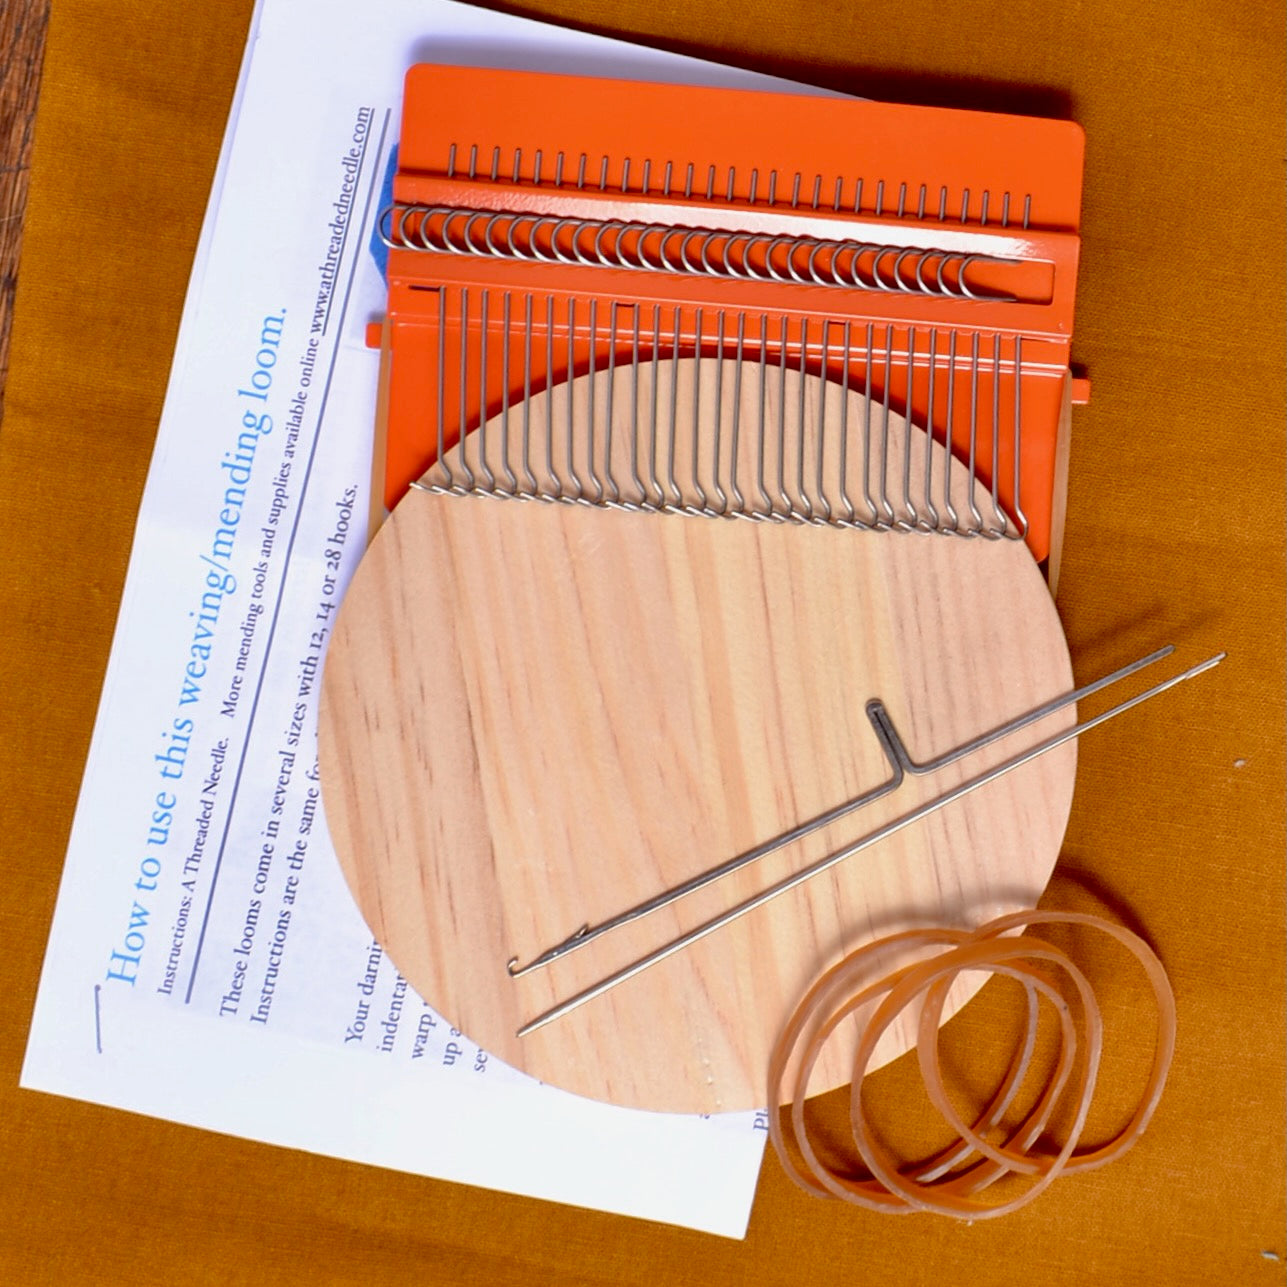 Orange coated metal mending loom  with wood weaving surface